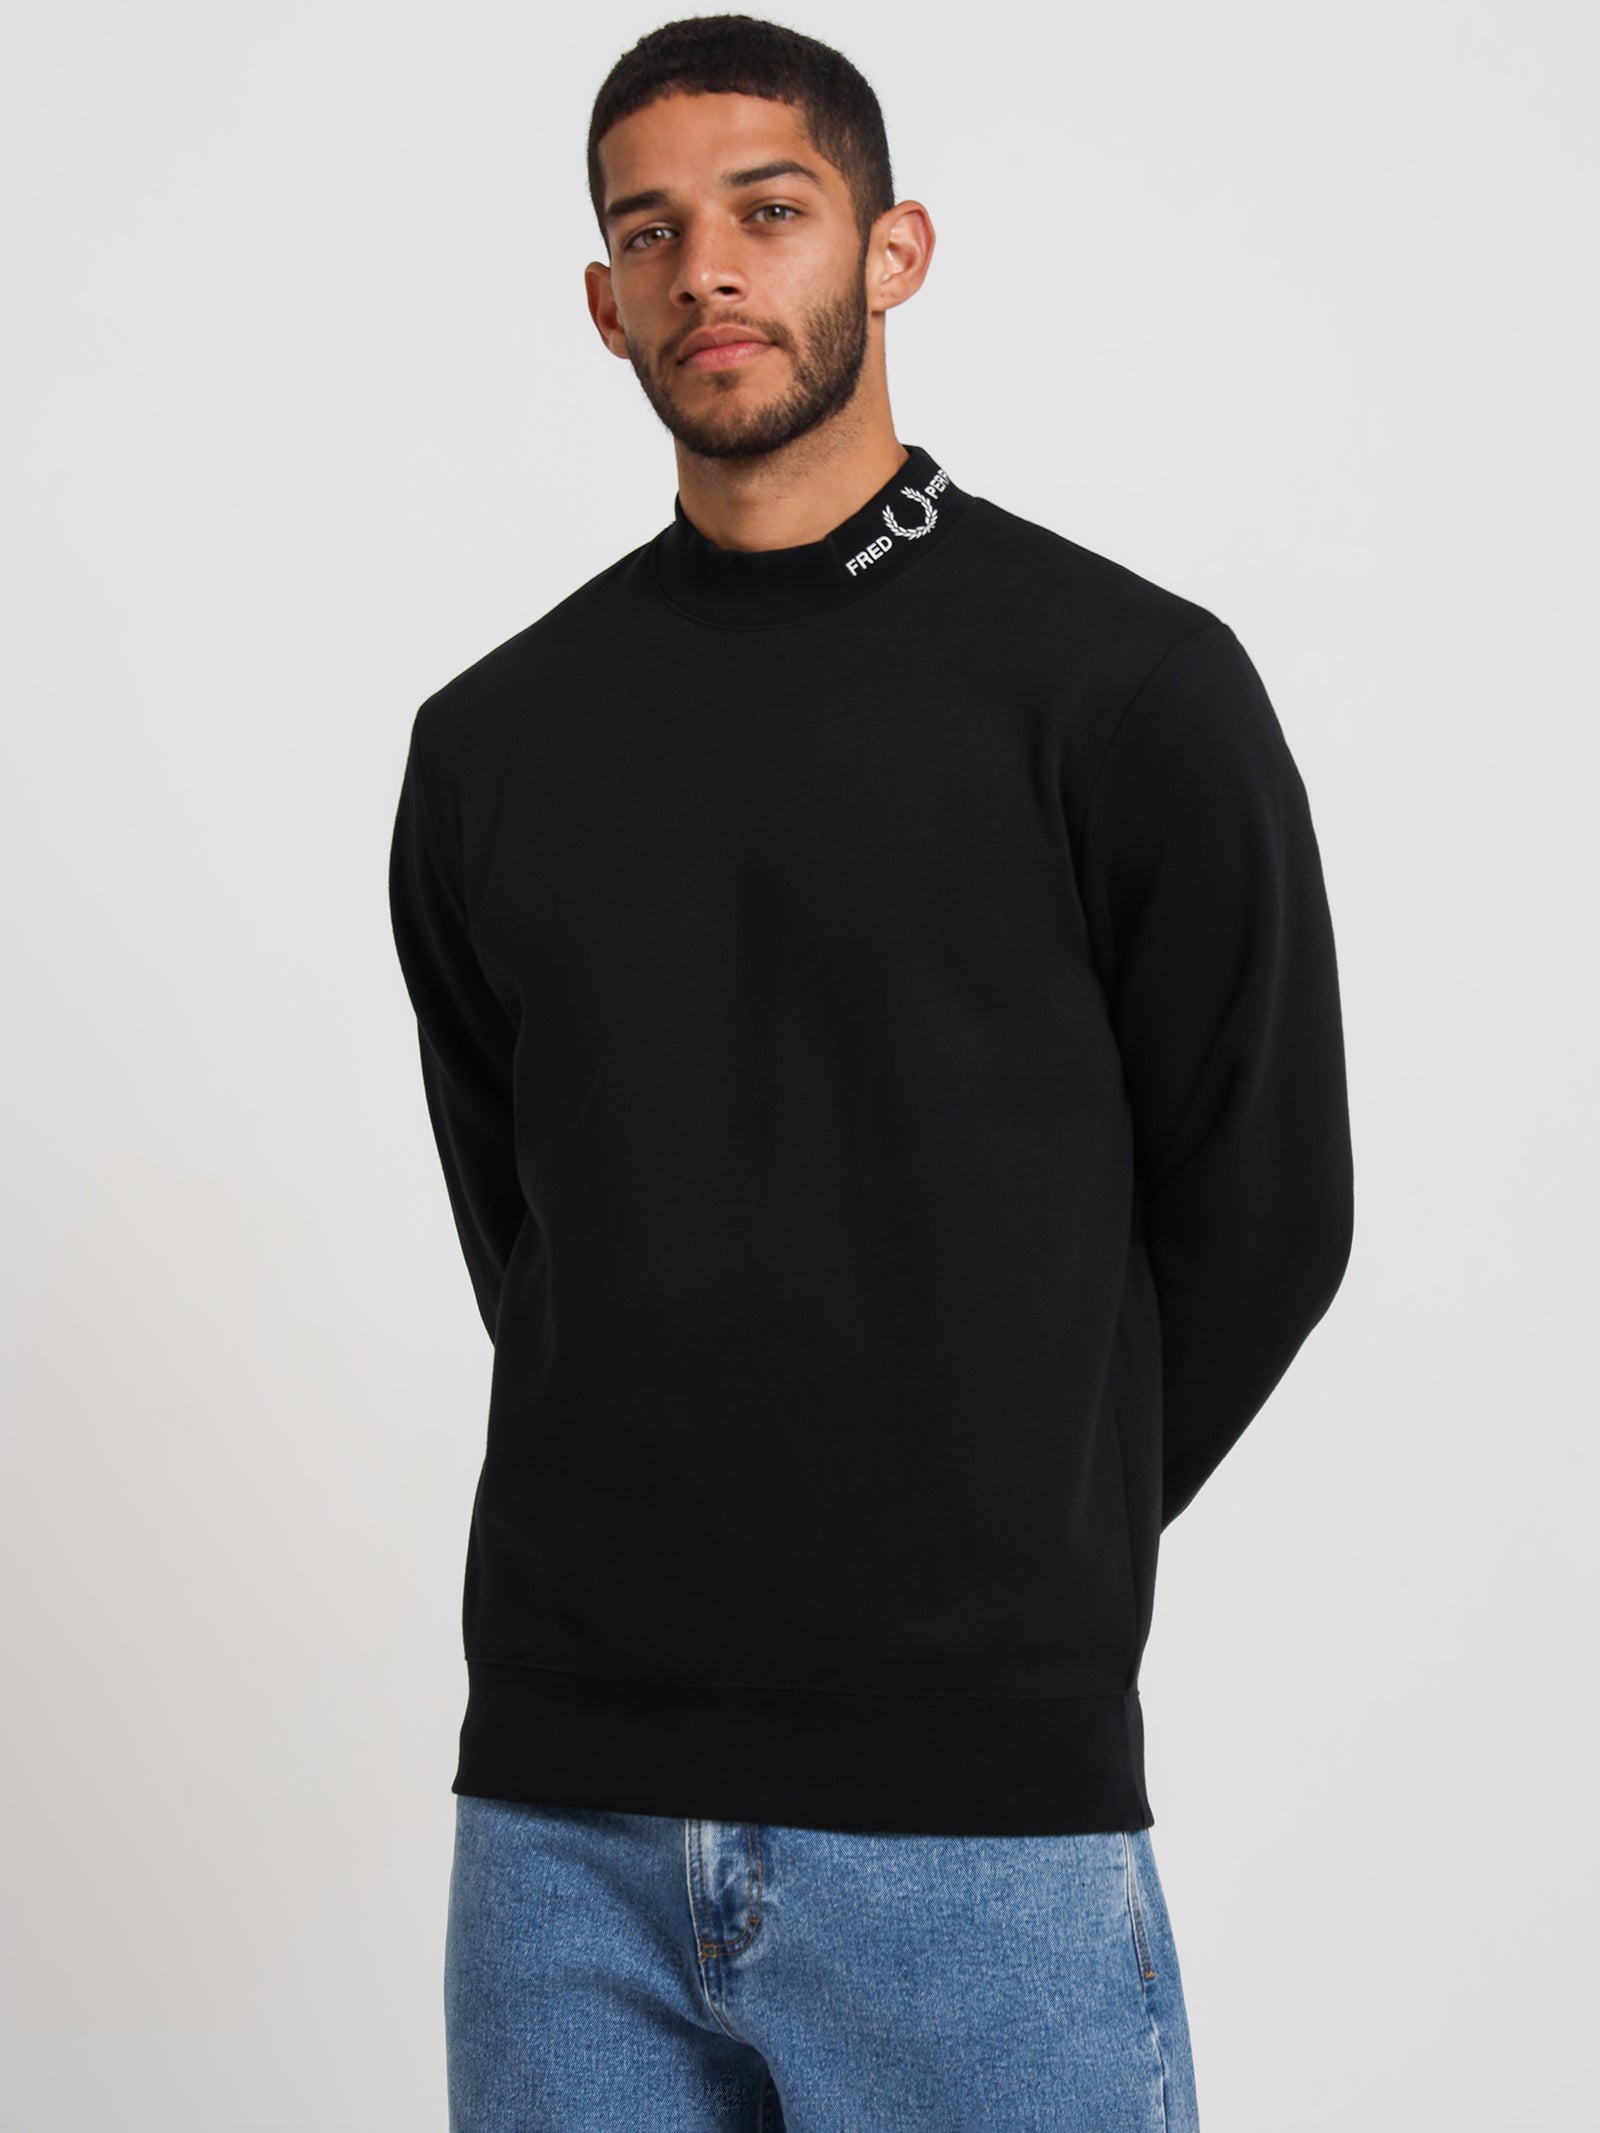 Branded Collared Sweatshirt in Black - Glue Store